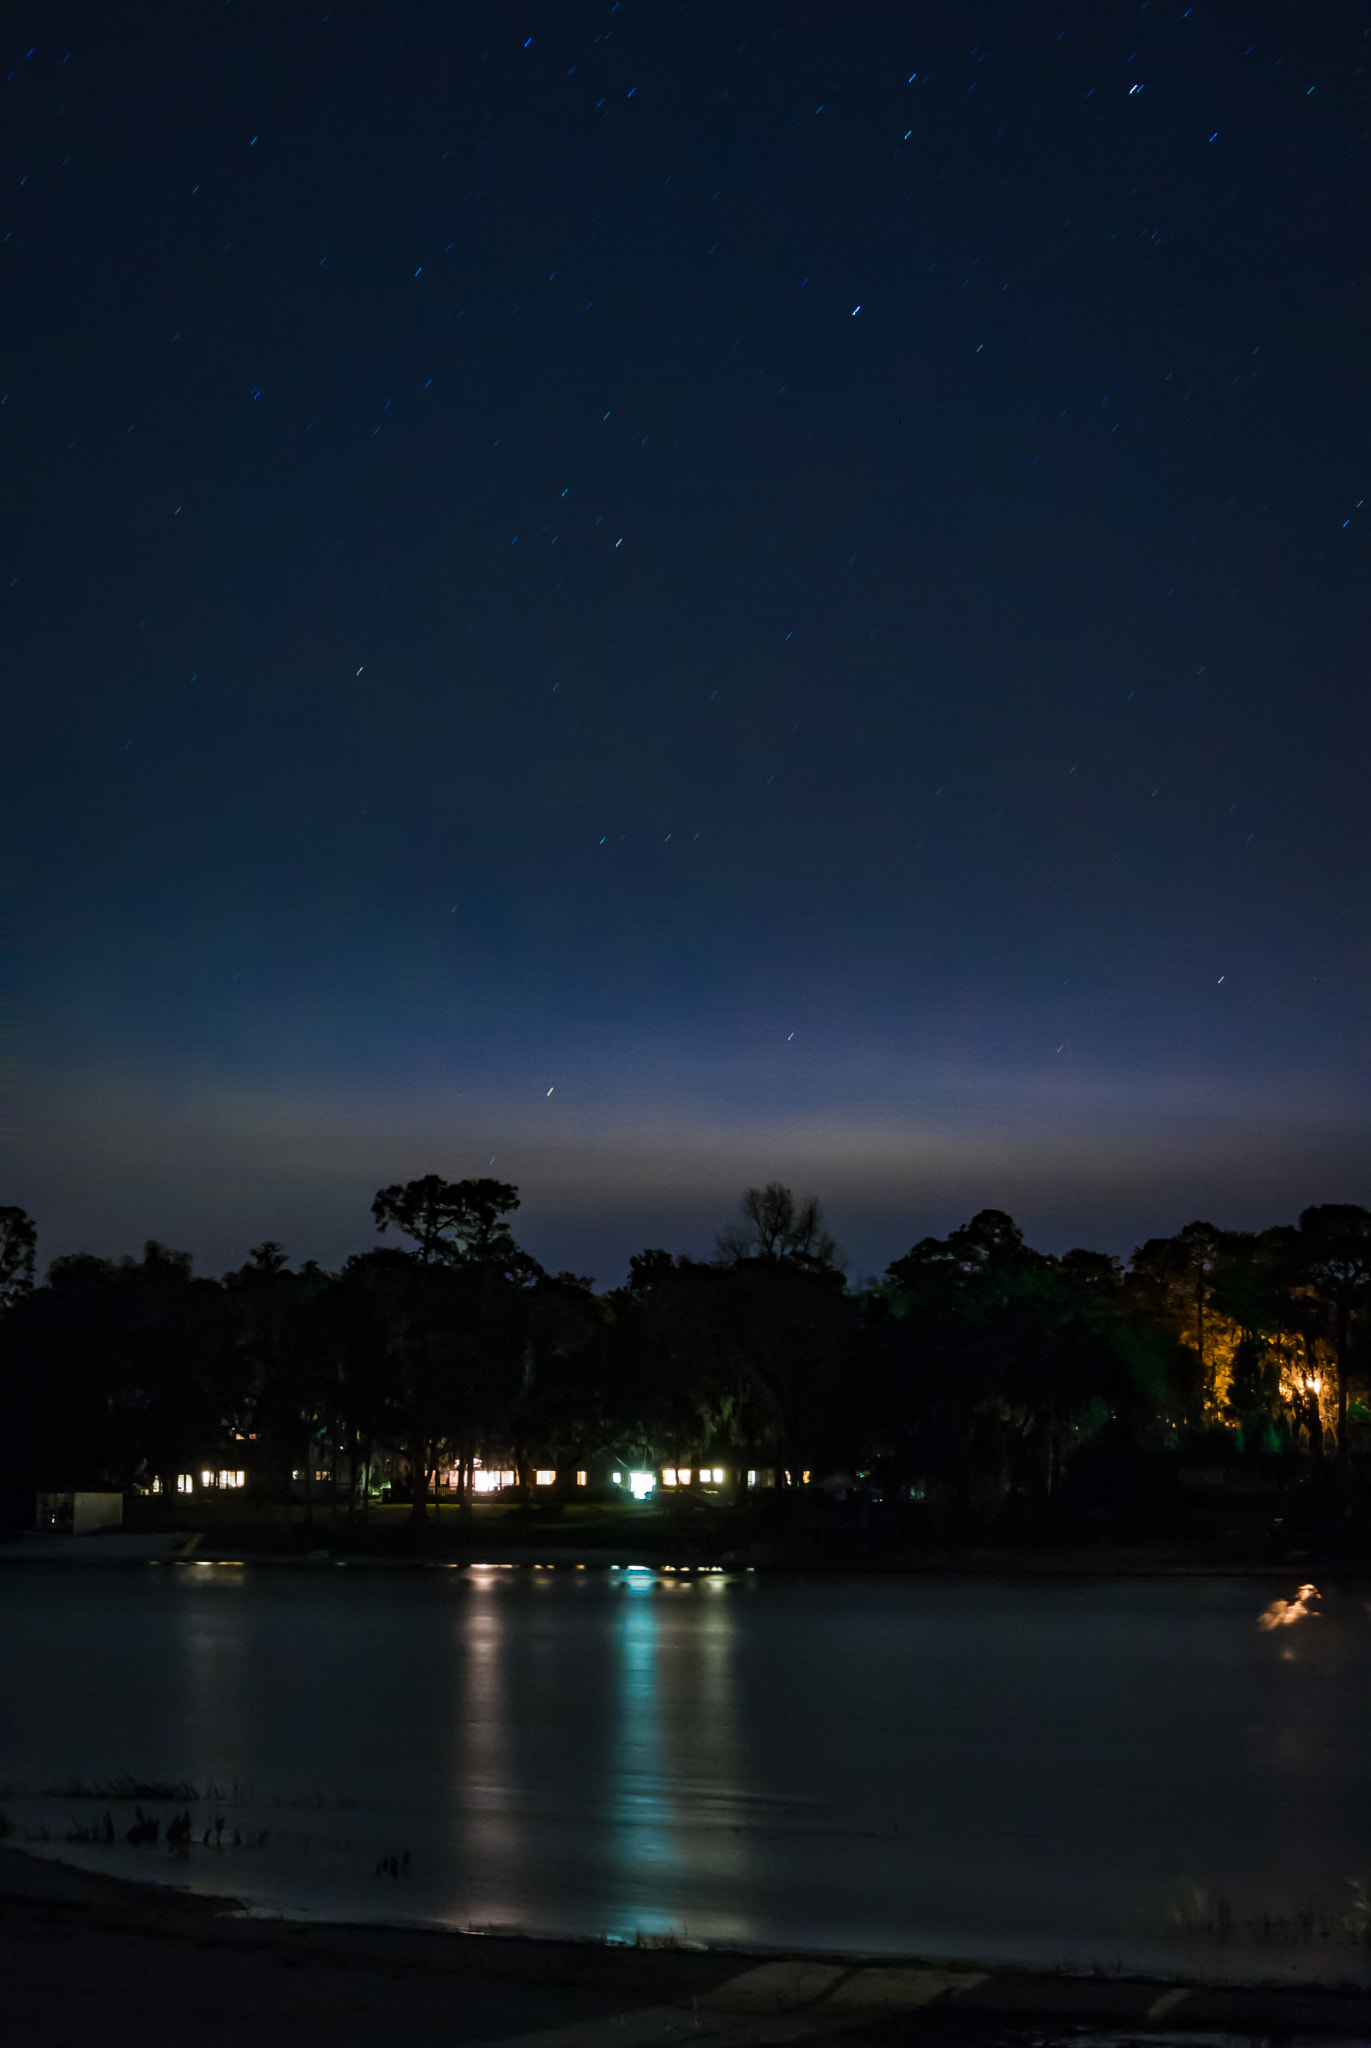 Nikon 1 J1 sample photo. Lake lilly at night photography